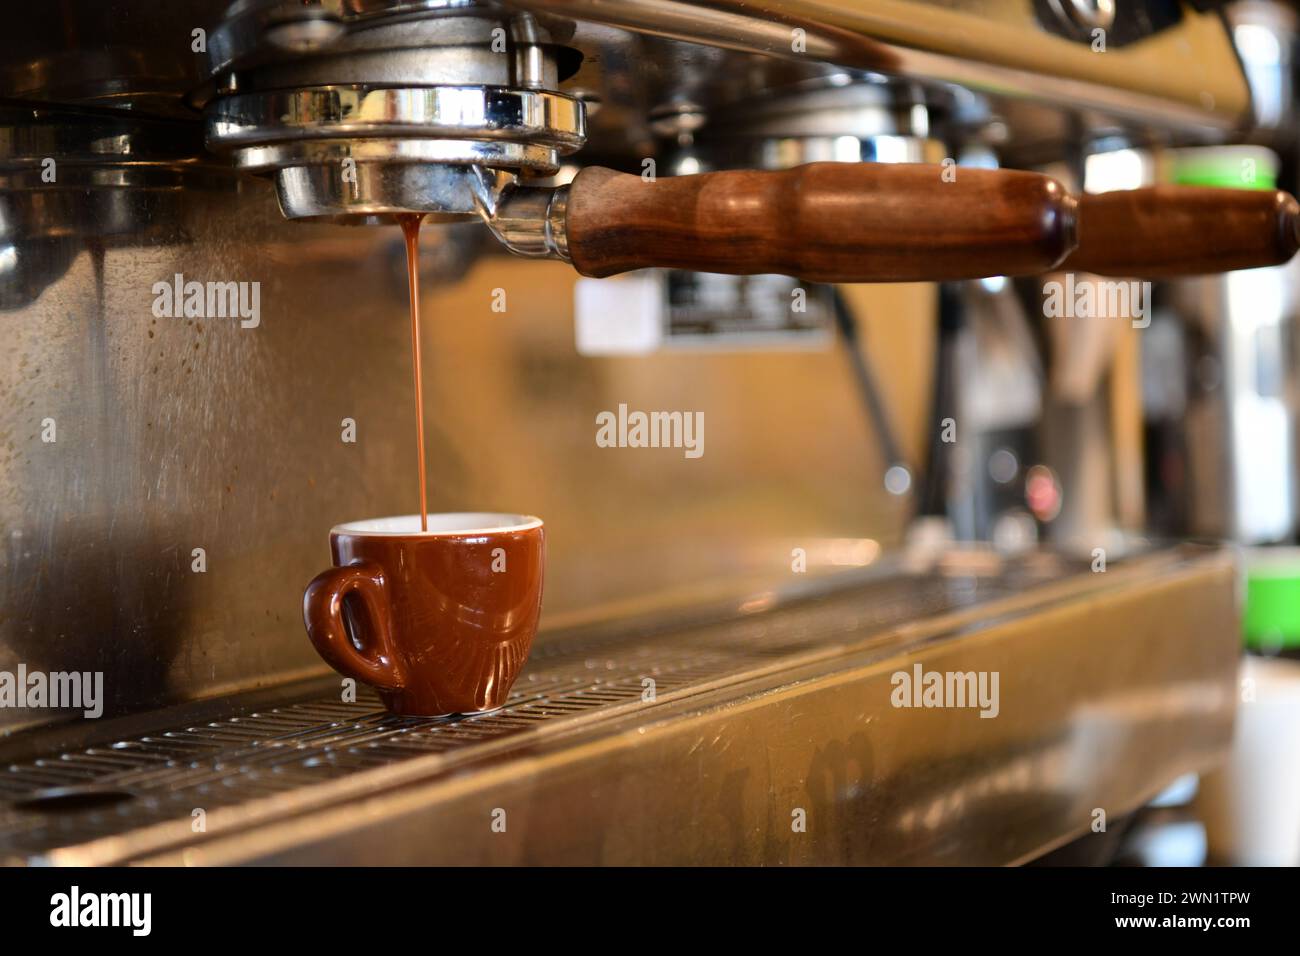 Nourriture boisson une machine à expresso faire un café expresso dans un café Banque D'Images